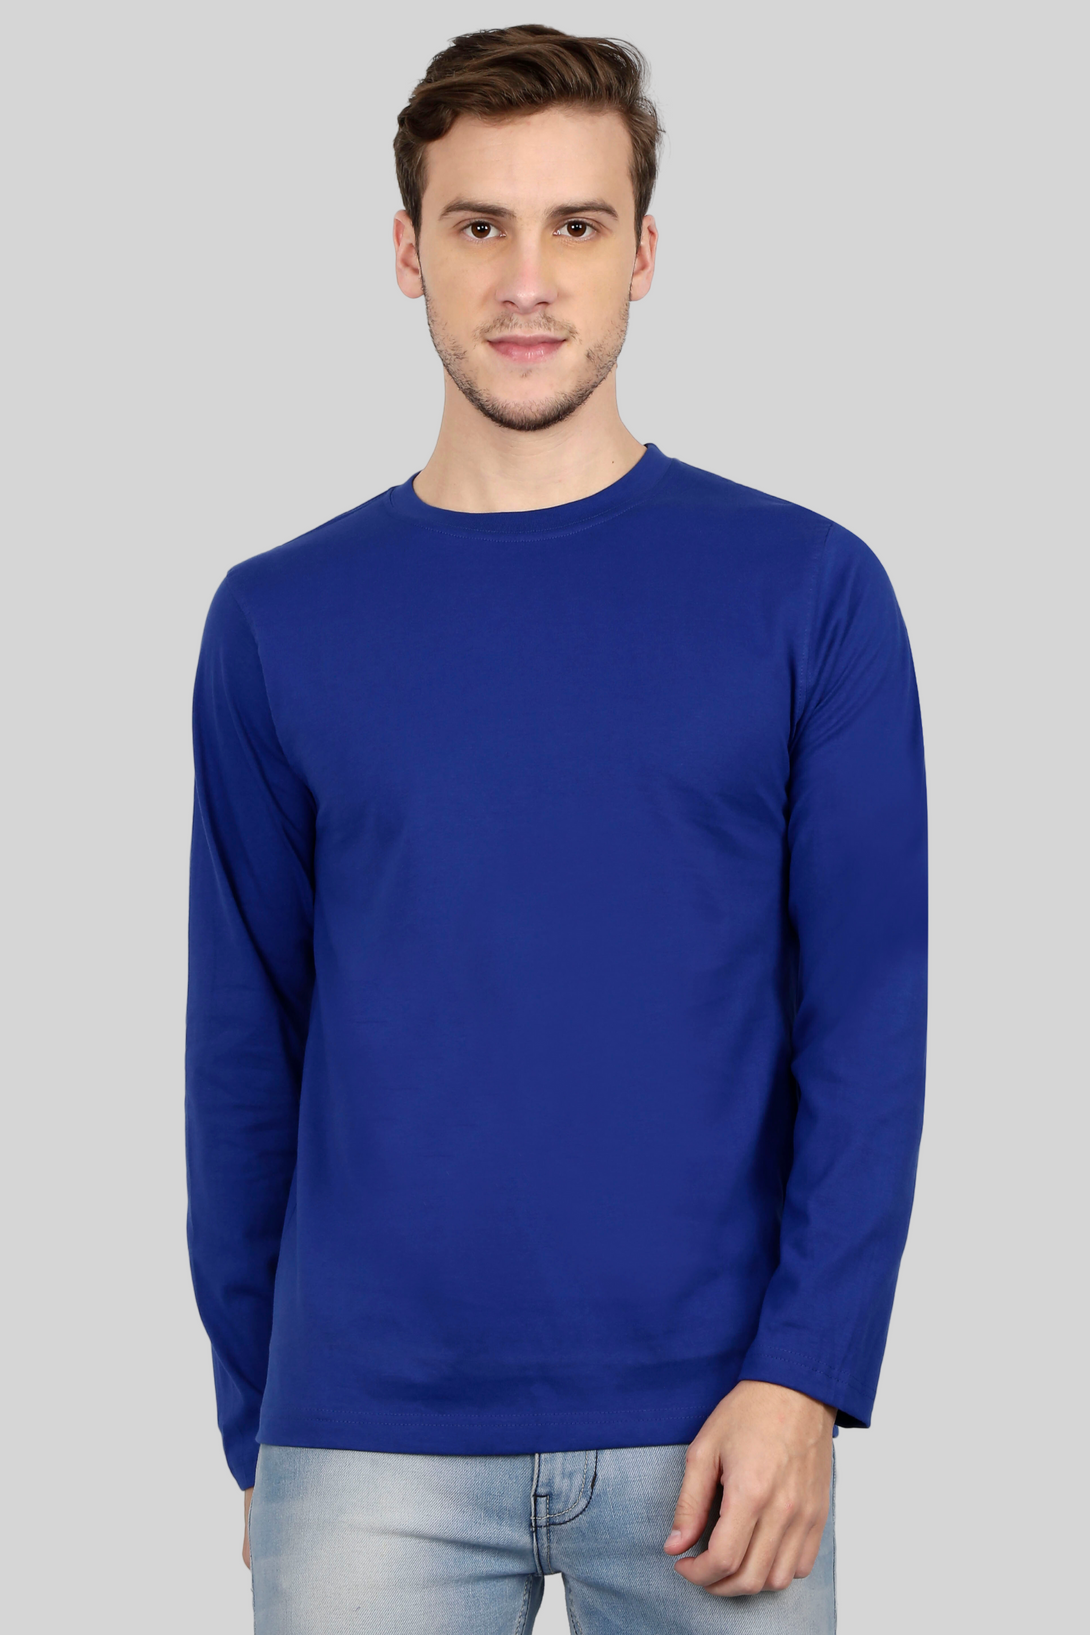 Royal Blue Full Sleeve T-Shirt For Men - WowWaves - 7